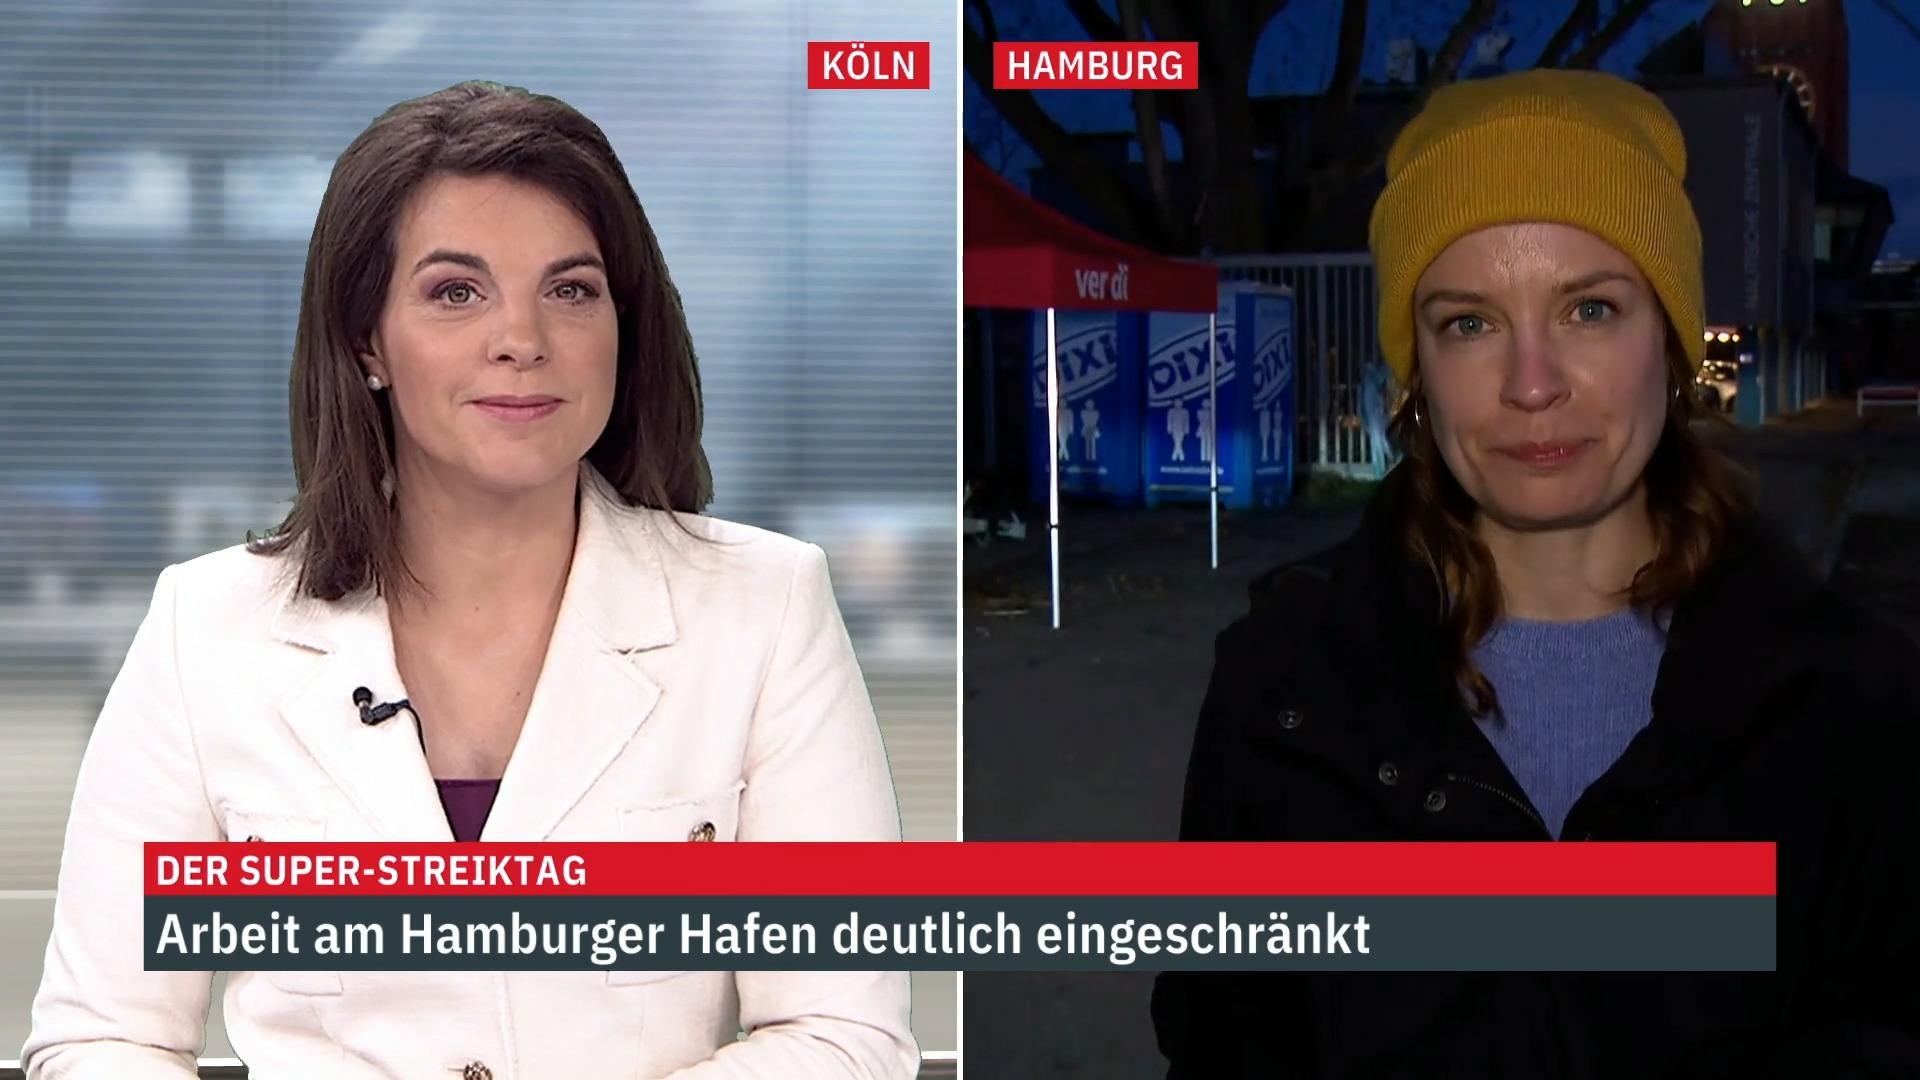 Giornalista di RTL: Il giorno del grande sciopero ad Amburgo il lavoro nel porto di Amburgo è limitato